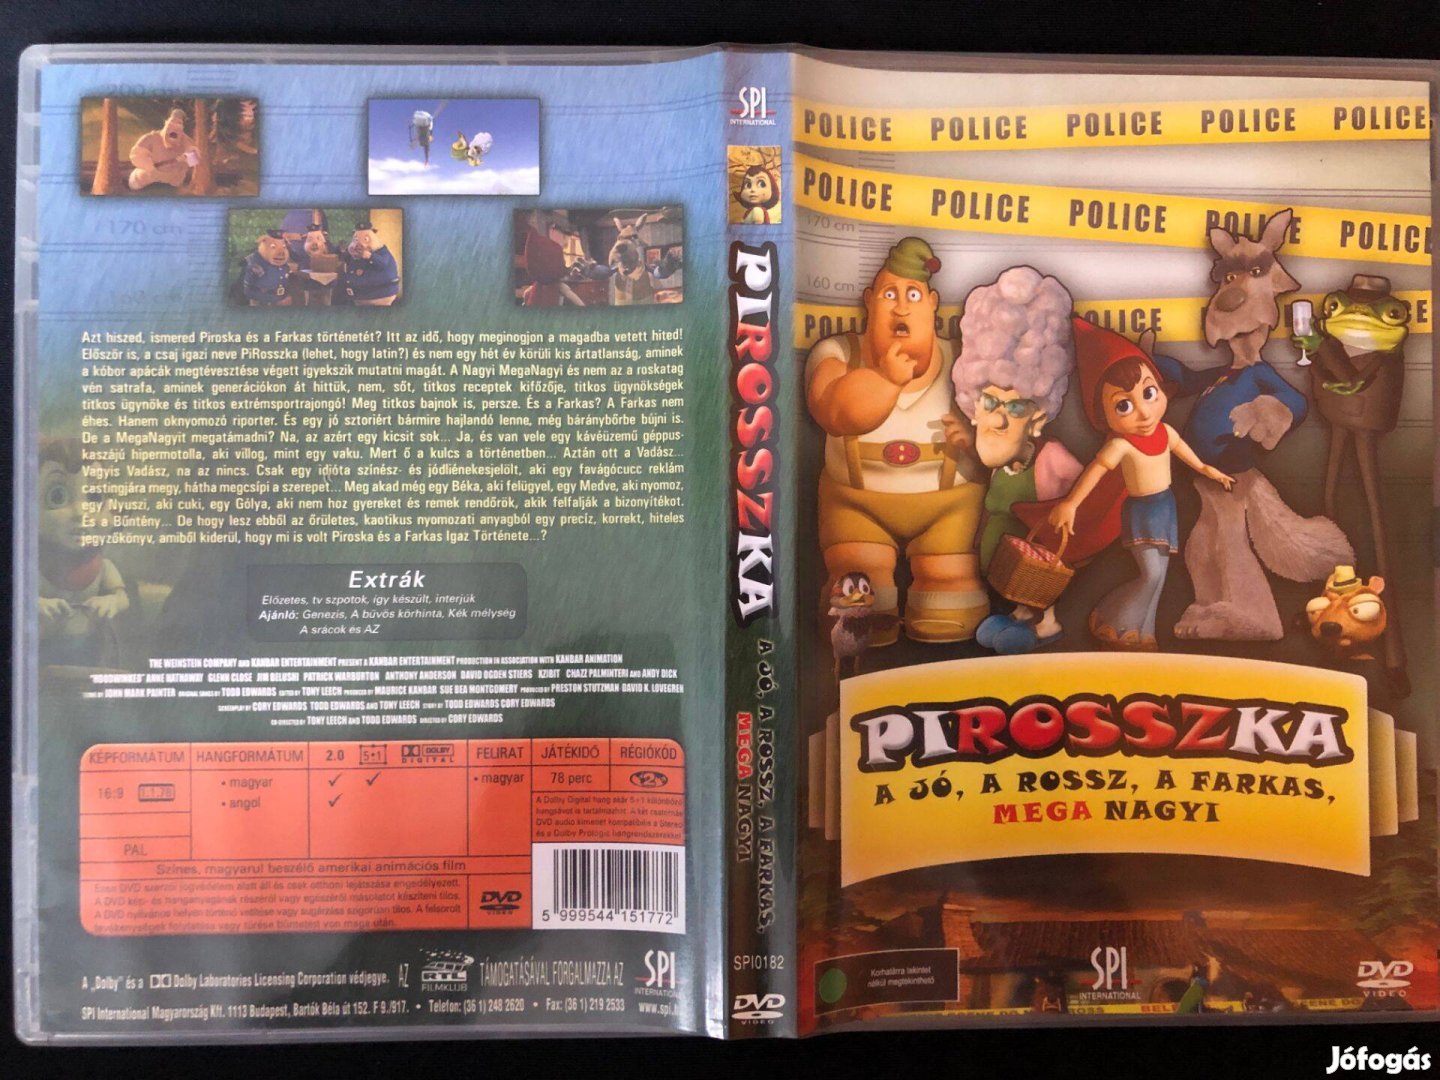 Pirosszka DVD A Jó, a Rossz, a Farkas, mega nagyi